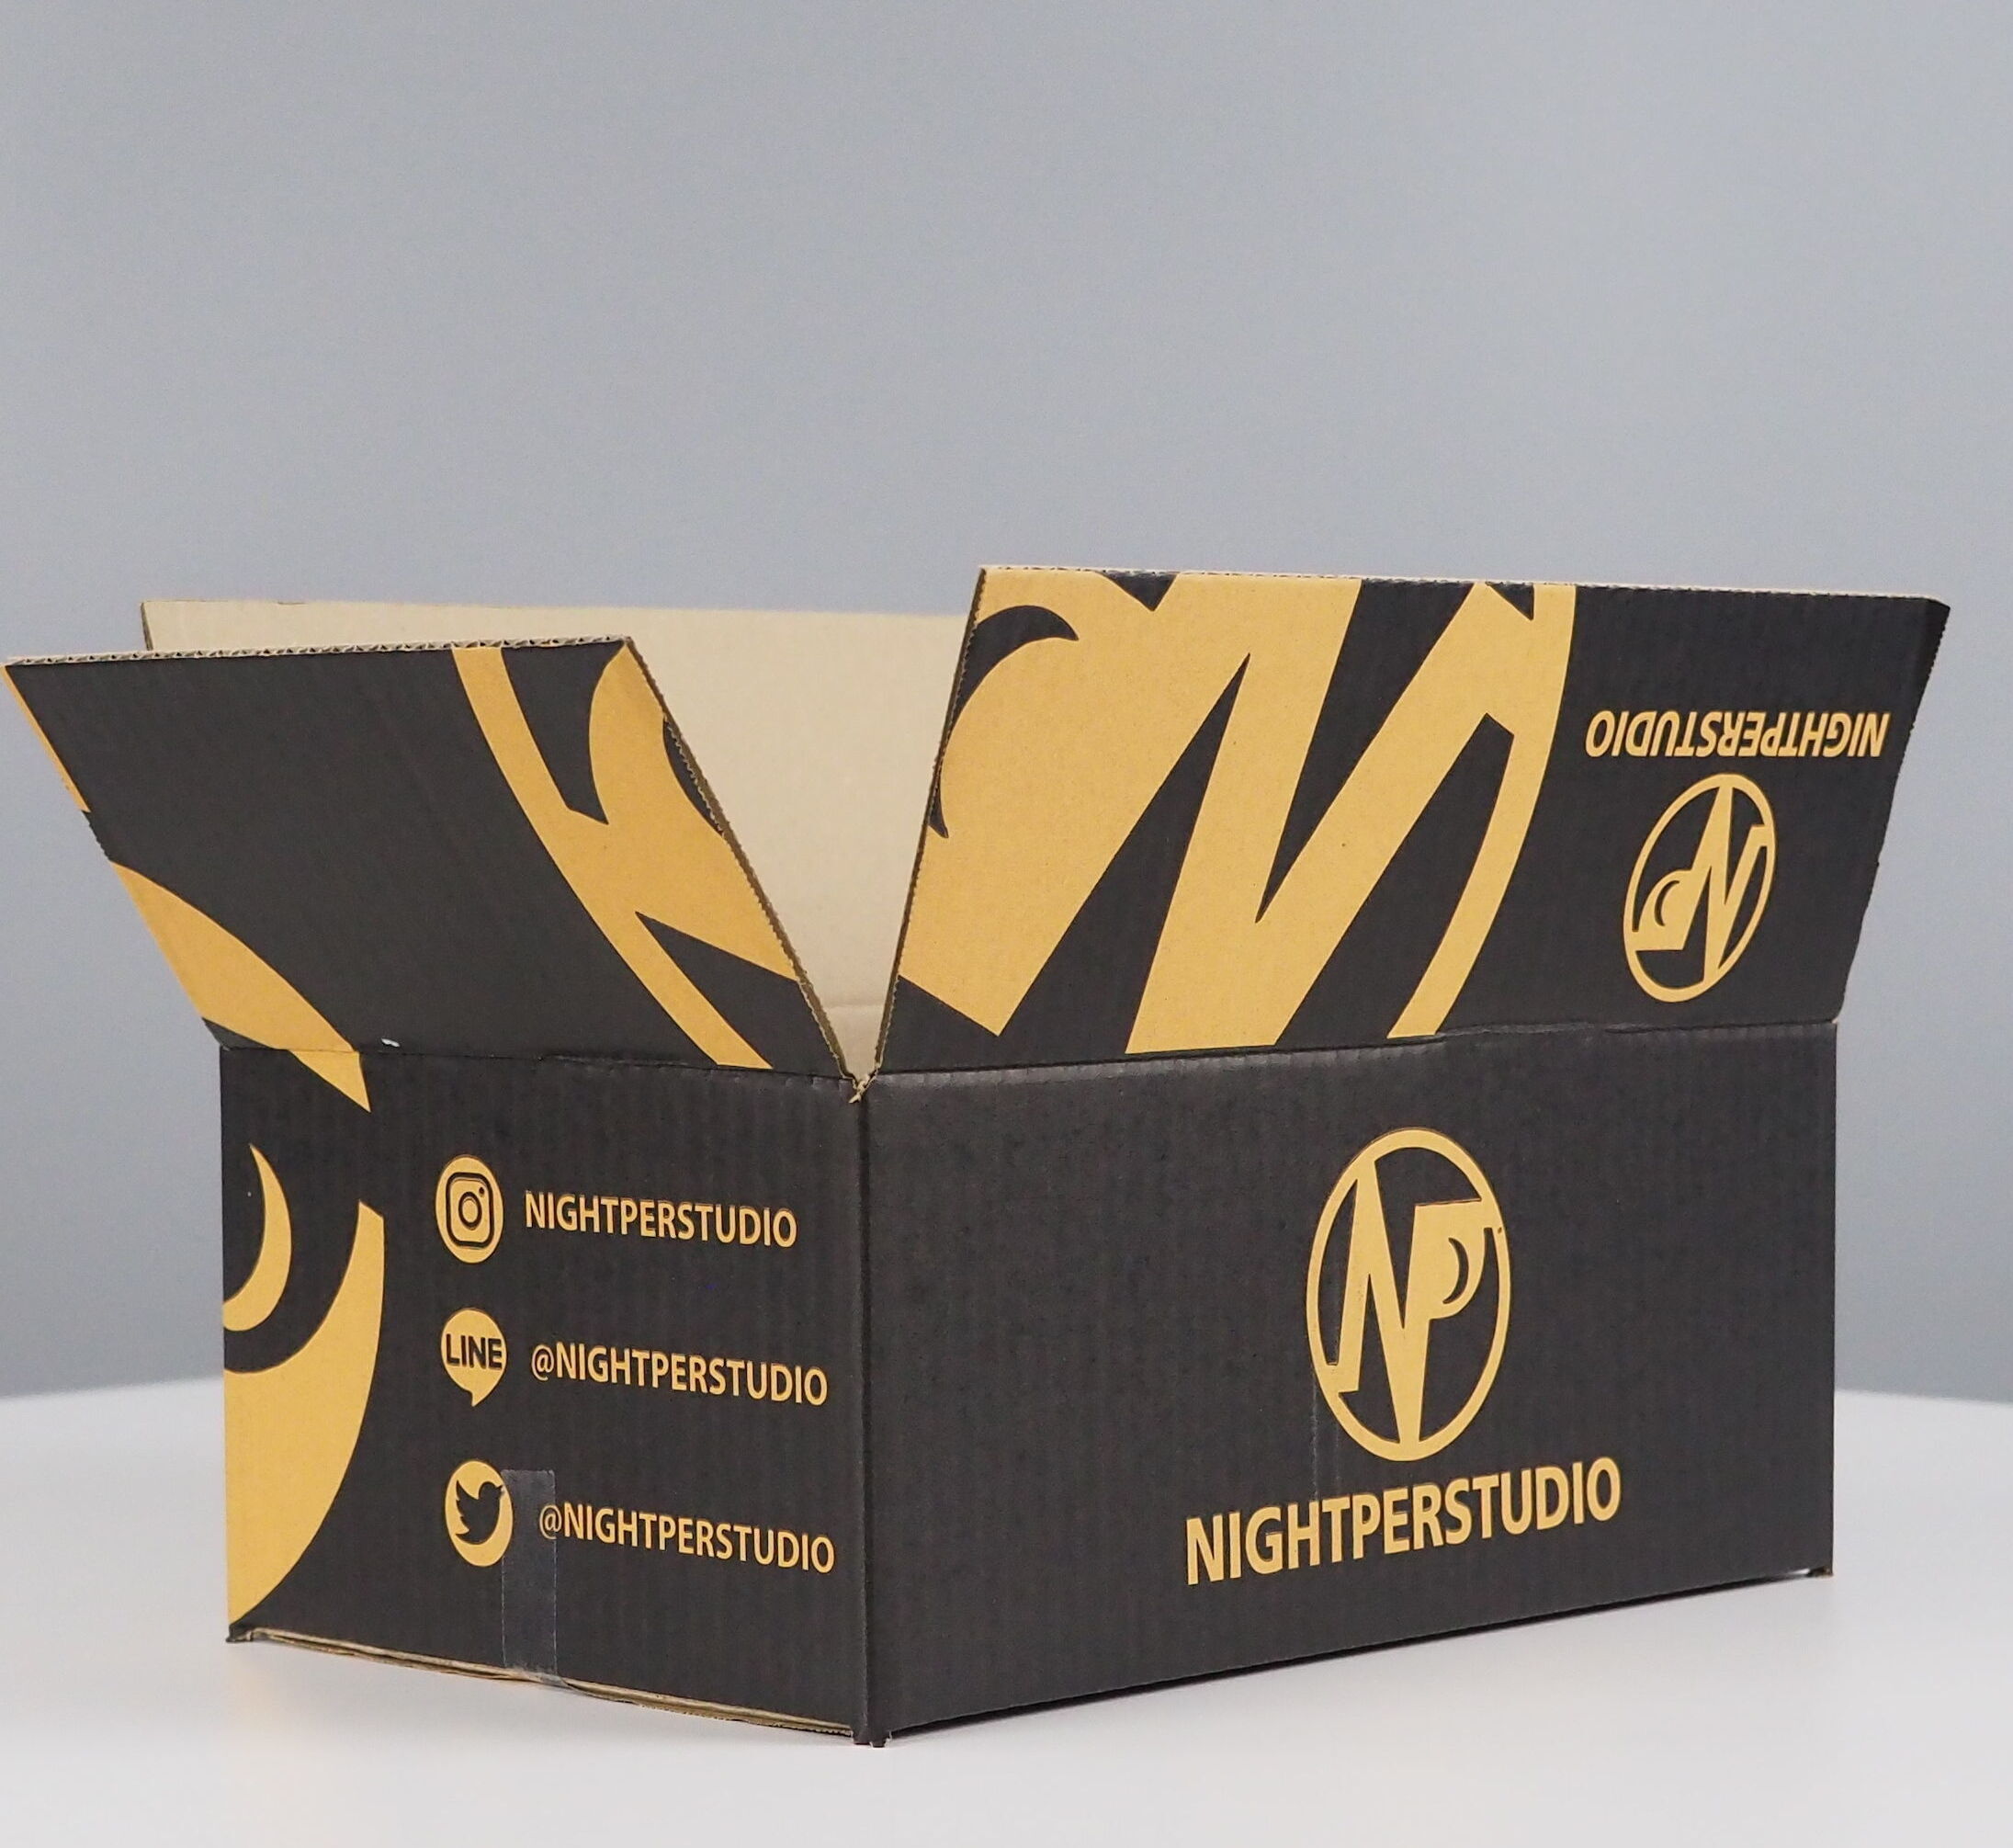 กล่องแบรนด์เสื้อผ้าแนวstreetwear
Brand : NIGHTPERSTUDIO
รูปแบบกล่อง : กล่องฝาชน
ขนาดกล่อง : ไปรษณณีย์ ปณ B 17x25x9 cm
ขนาดกล่อง : ไปรษณณีย์ ปณ D 22x35x14cm 
ความหนากล่อง : 3 ชั้น ลอน B
สีผิวกล่อง : KA